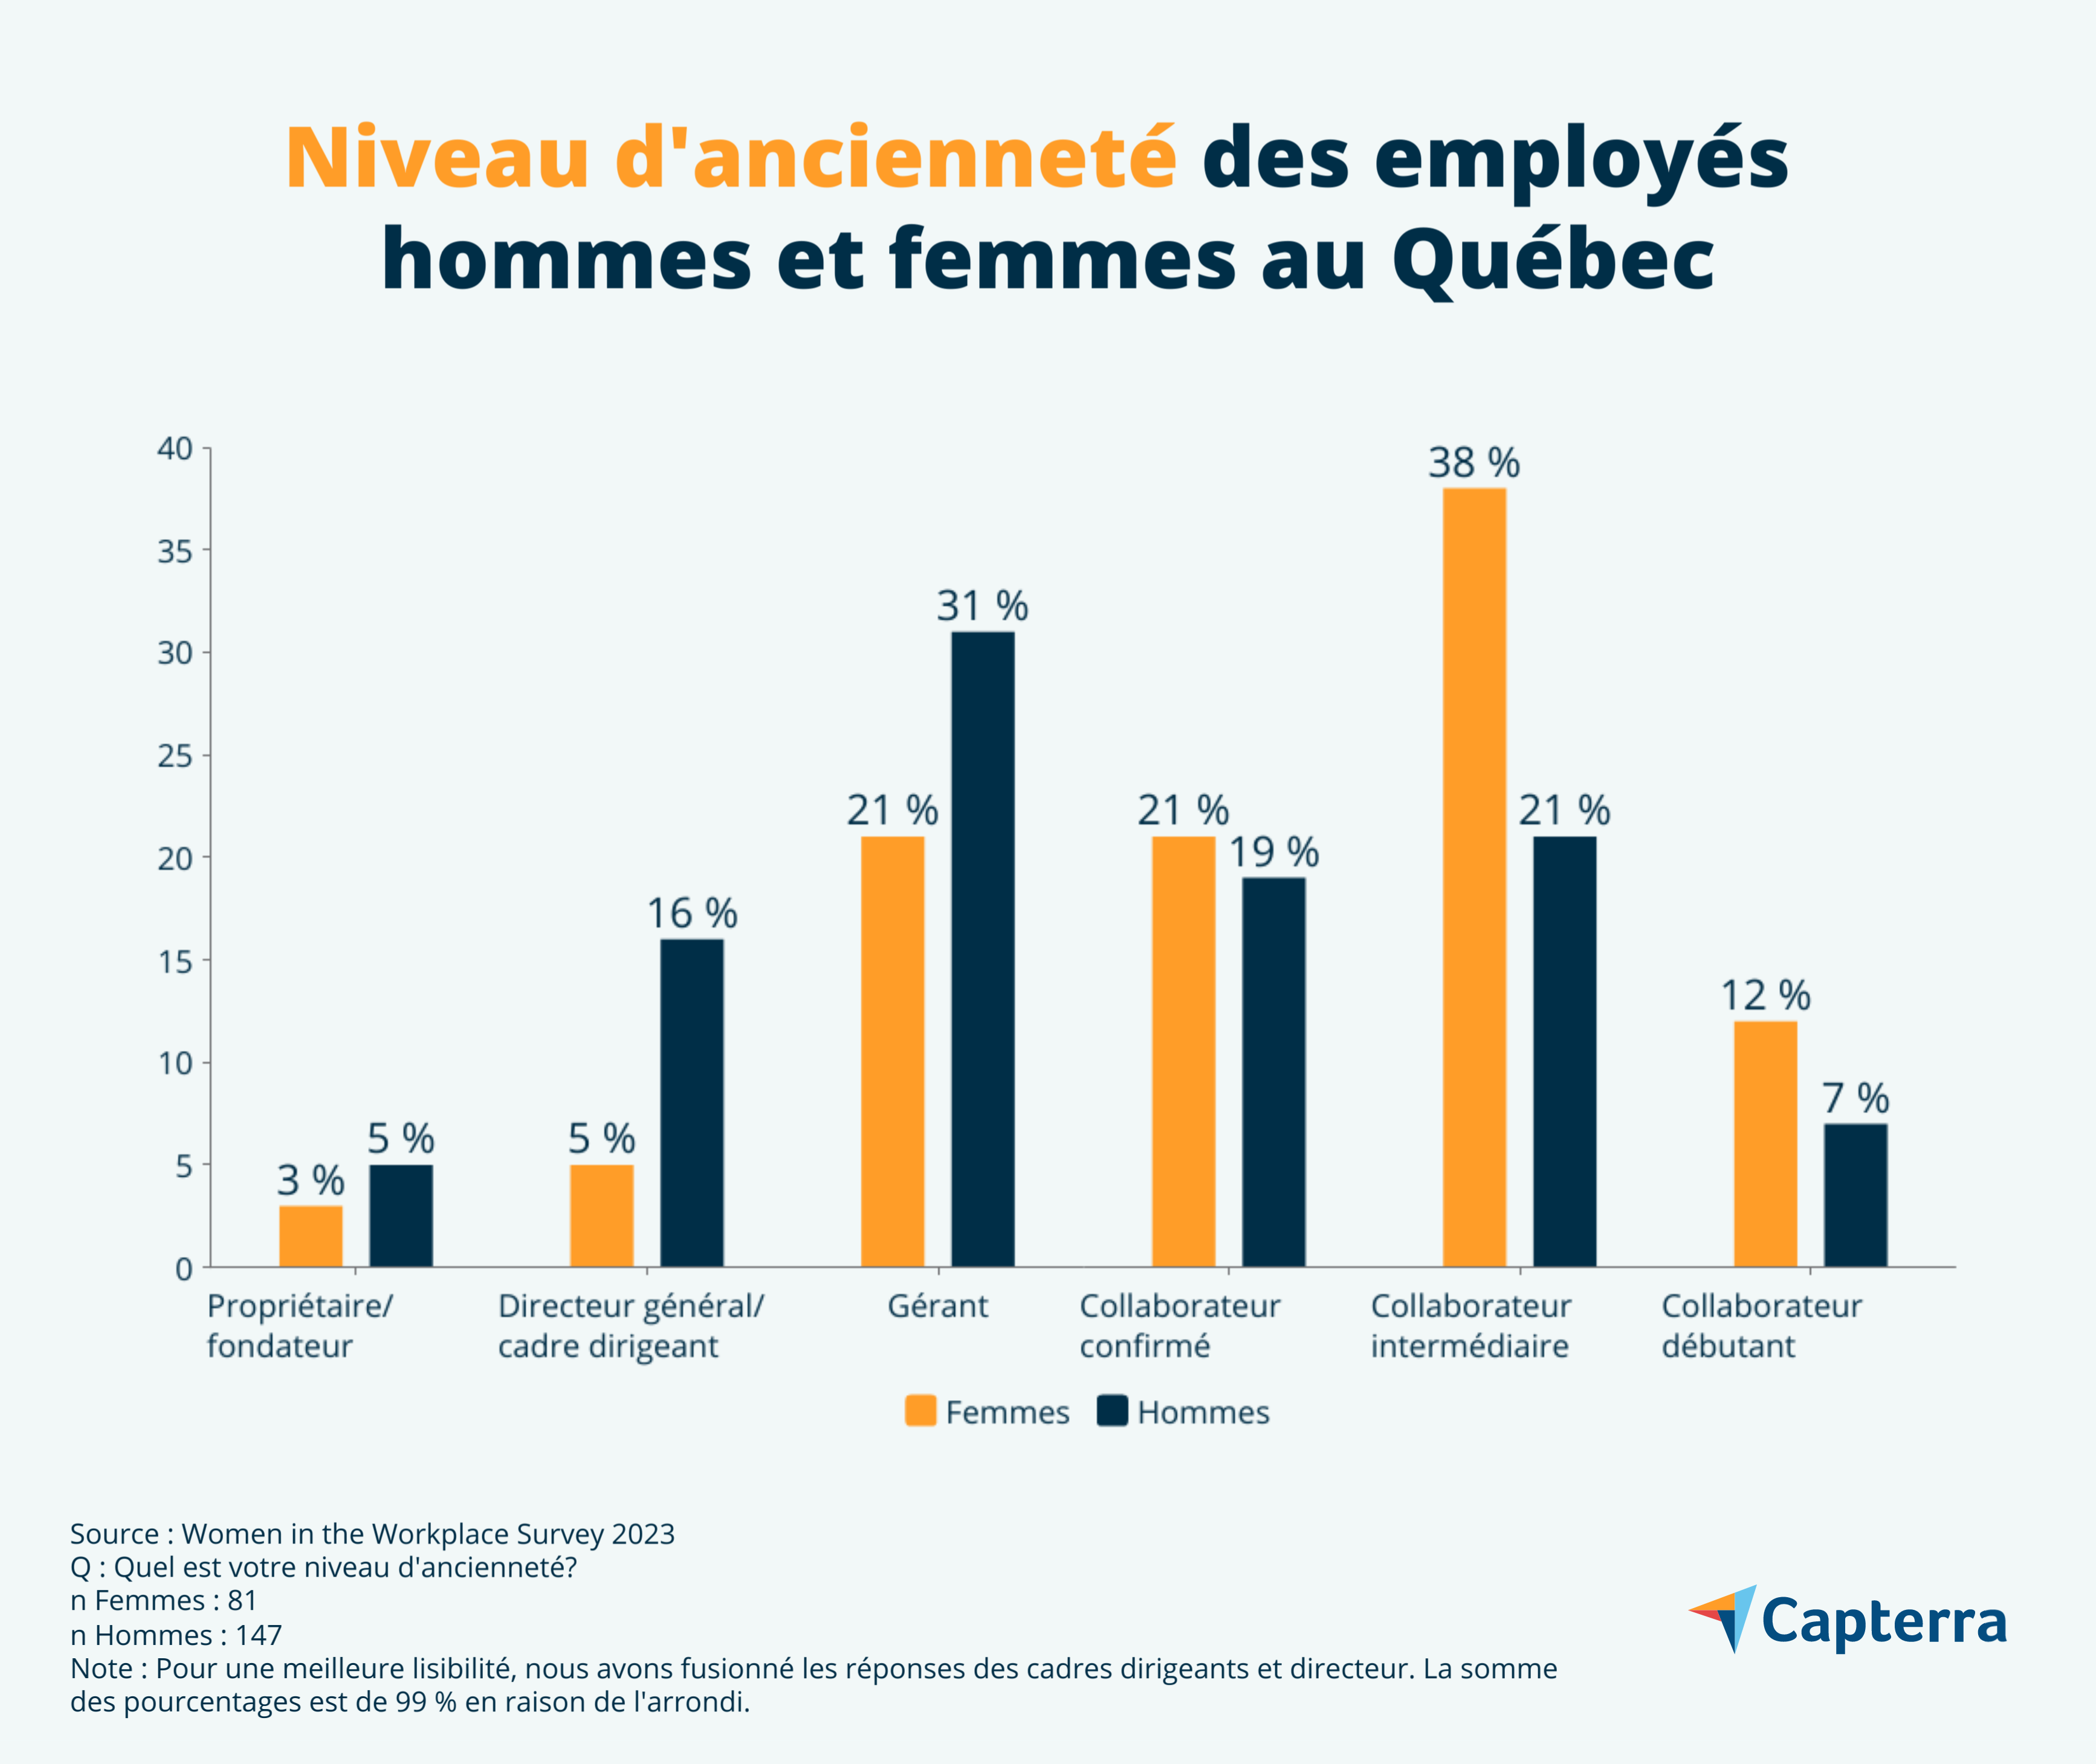 Égalité en milieu professionnel selon le sexe et le poste au Québec